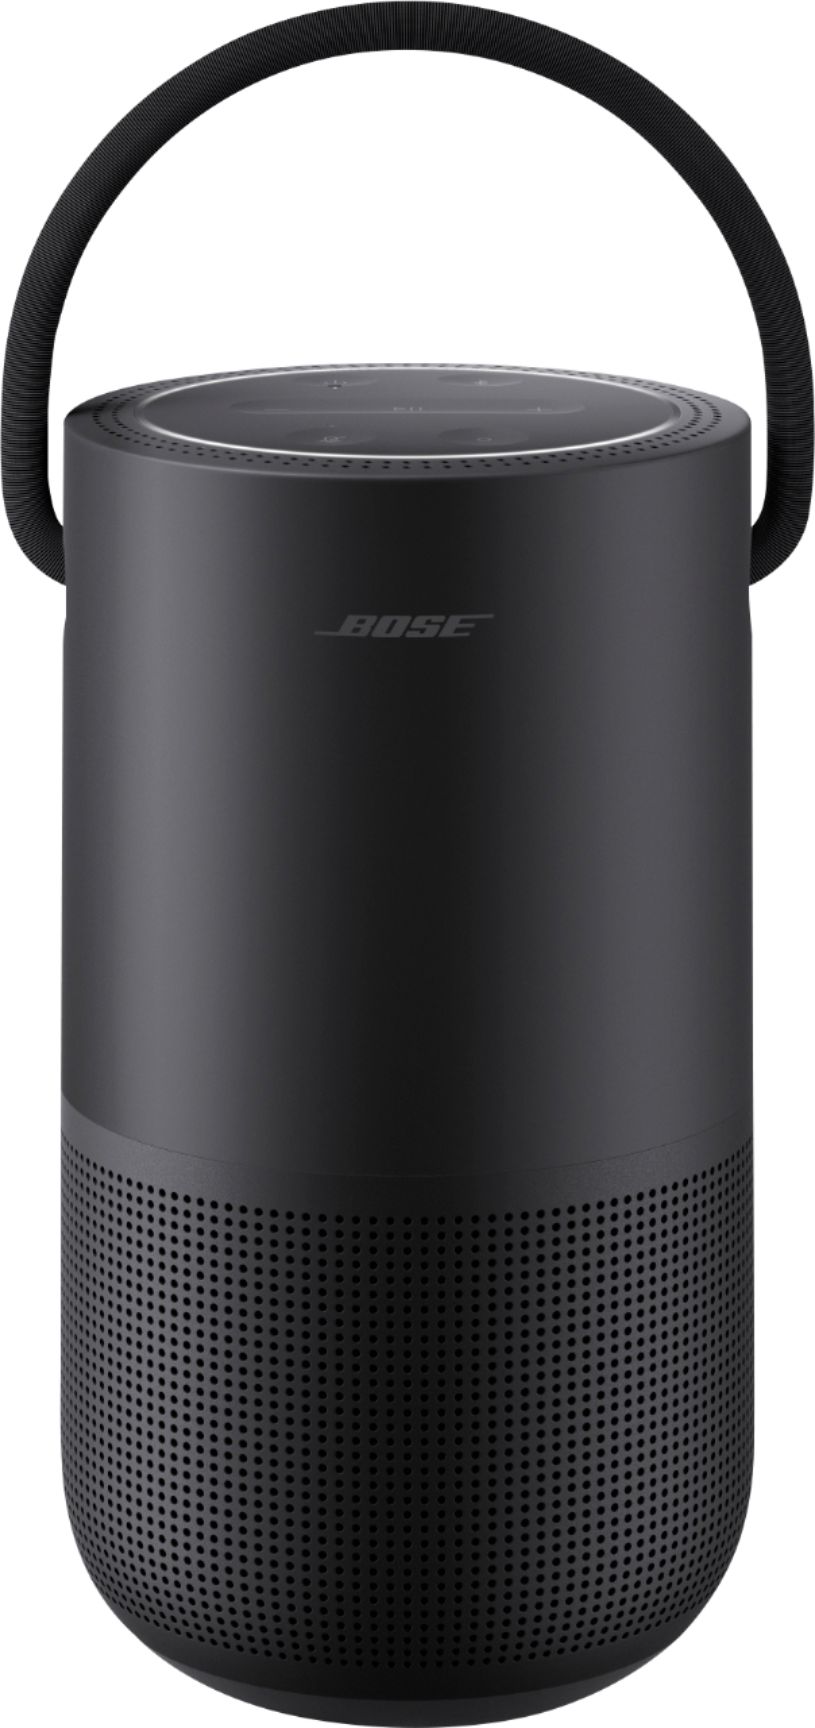 Sensación Instalaciones escocés Bose Portable Smart Speaker with built-in WiFi, Bluetooth, Google Assistant  and Alexa Voice Control Triple Black 829393-1100 - Best Buy